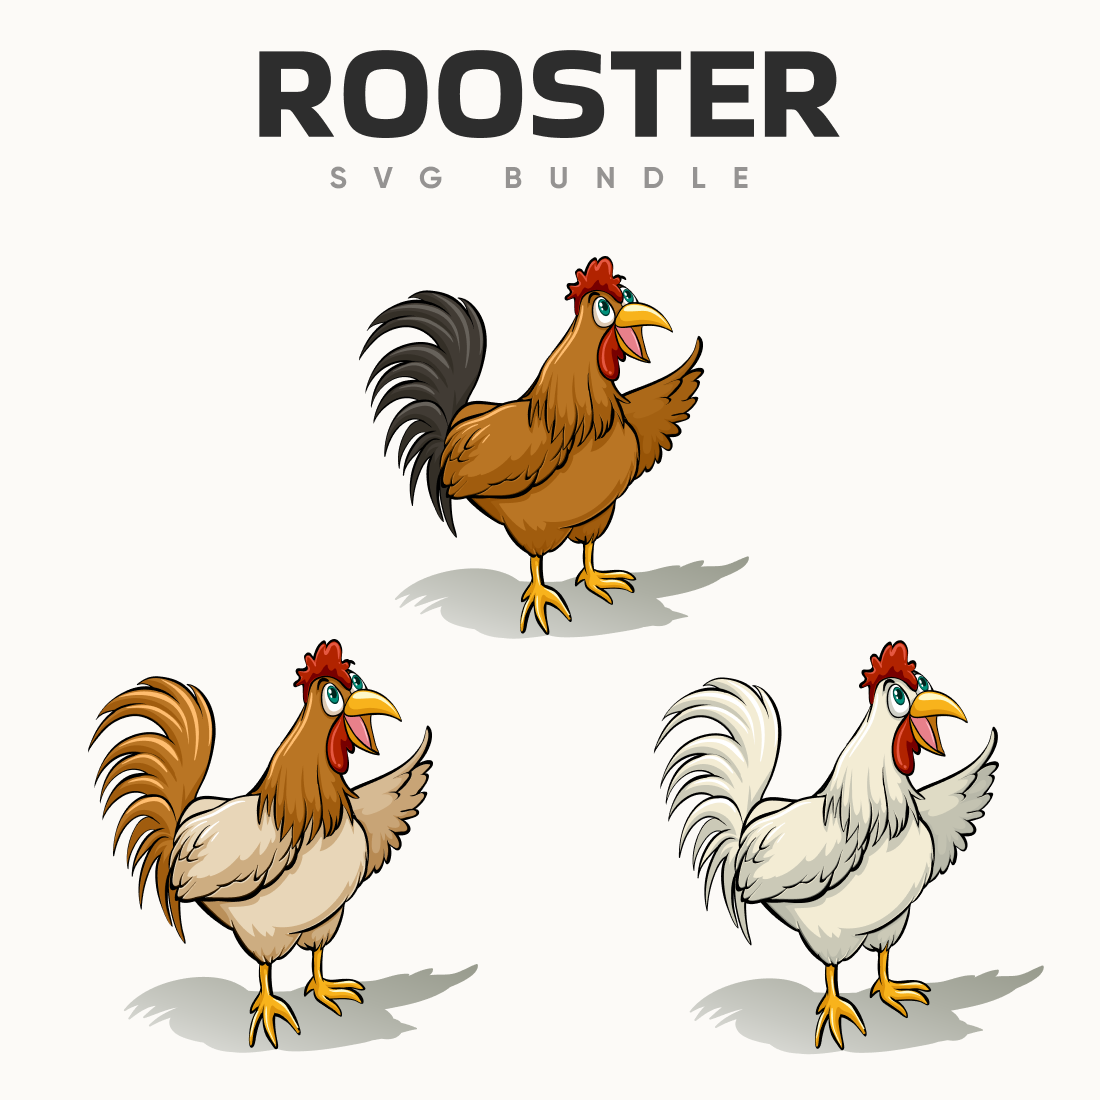 Rooster svg bundle.